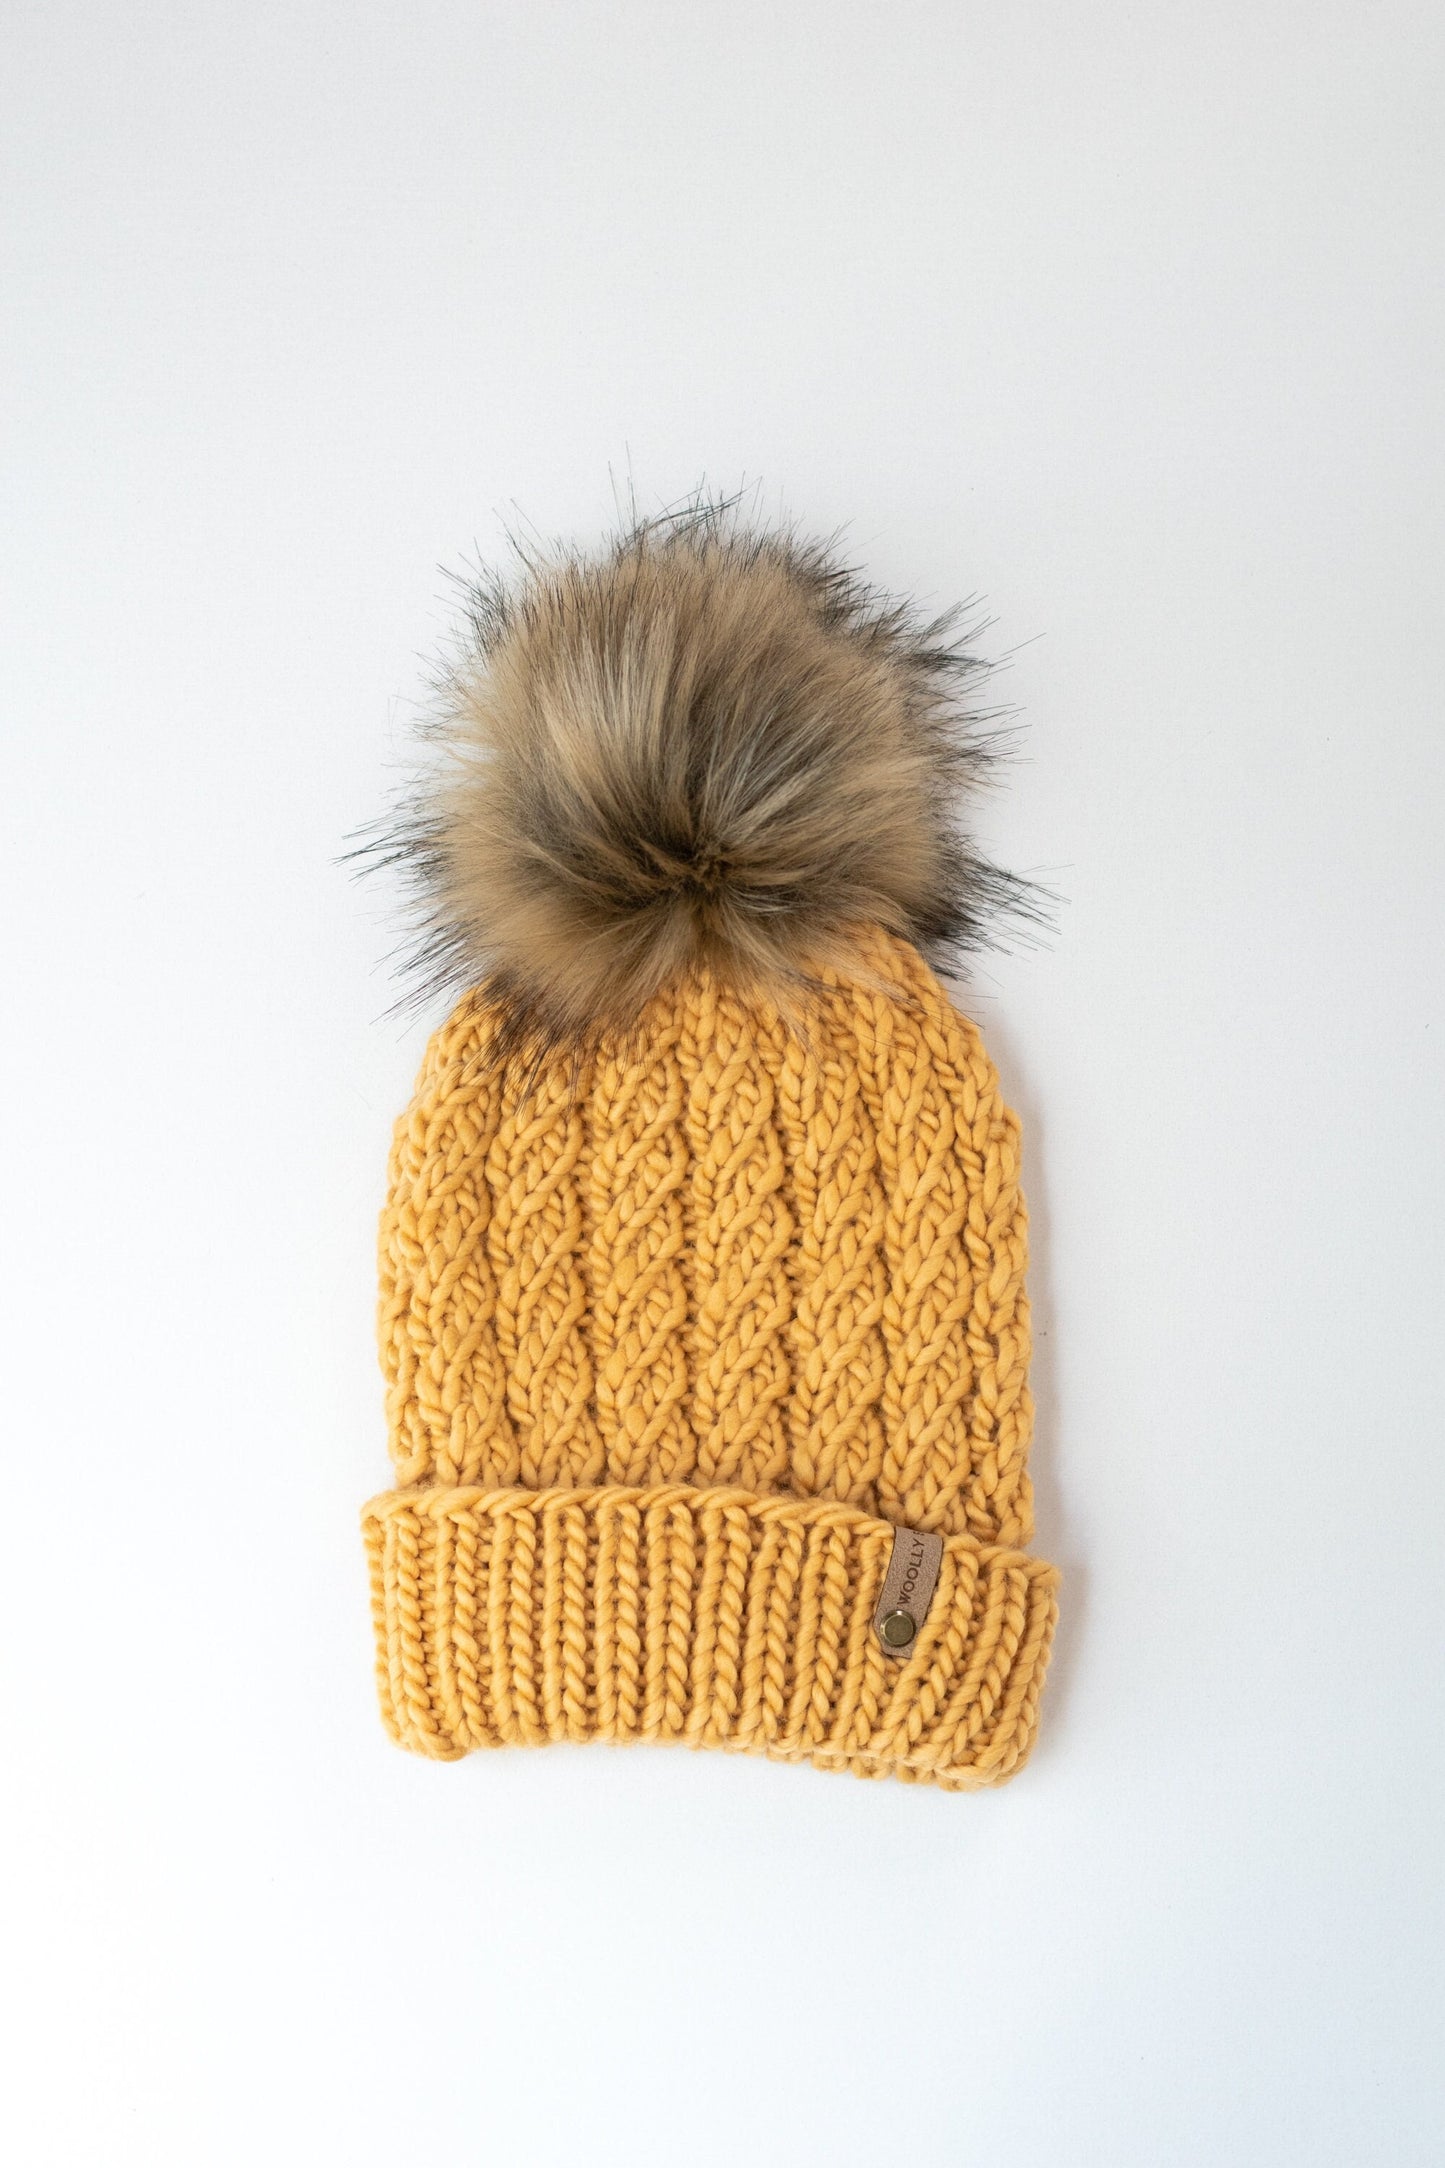 Yellow Merino Wool Knit Hat with Faux Fur Pom Pom, Luxury Chunky Knit Pom Pom Beanie, Ethically Sourced Wool Hat, Hand Knit Hat